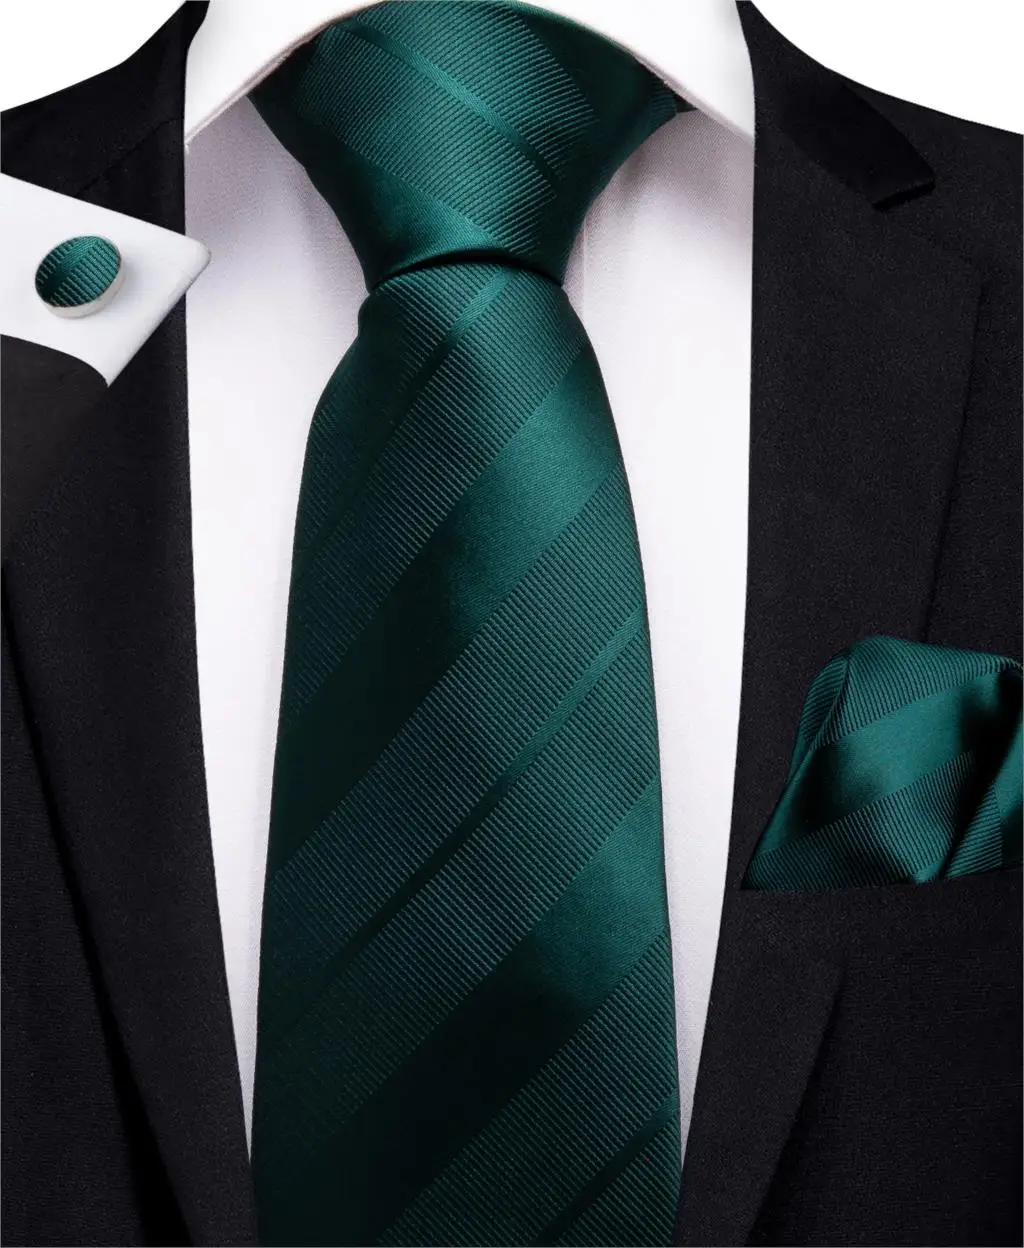 Барри Ван Коричневый Синий Серый Фиолетовый солидный мужской галстук Бизнес Галстуки шелковый галстук для мужчин 8 см Широкий Галстук Формальная вечеринка - Цвет: N-7222